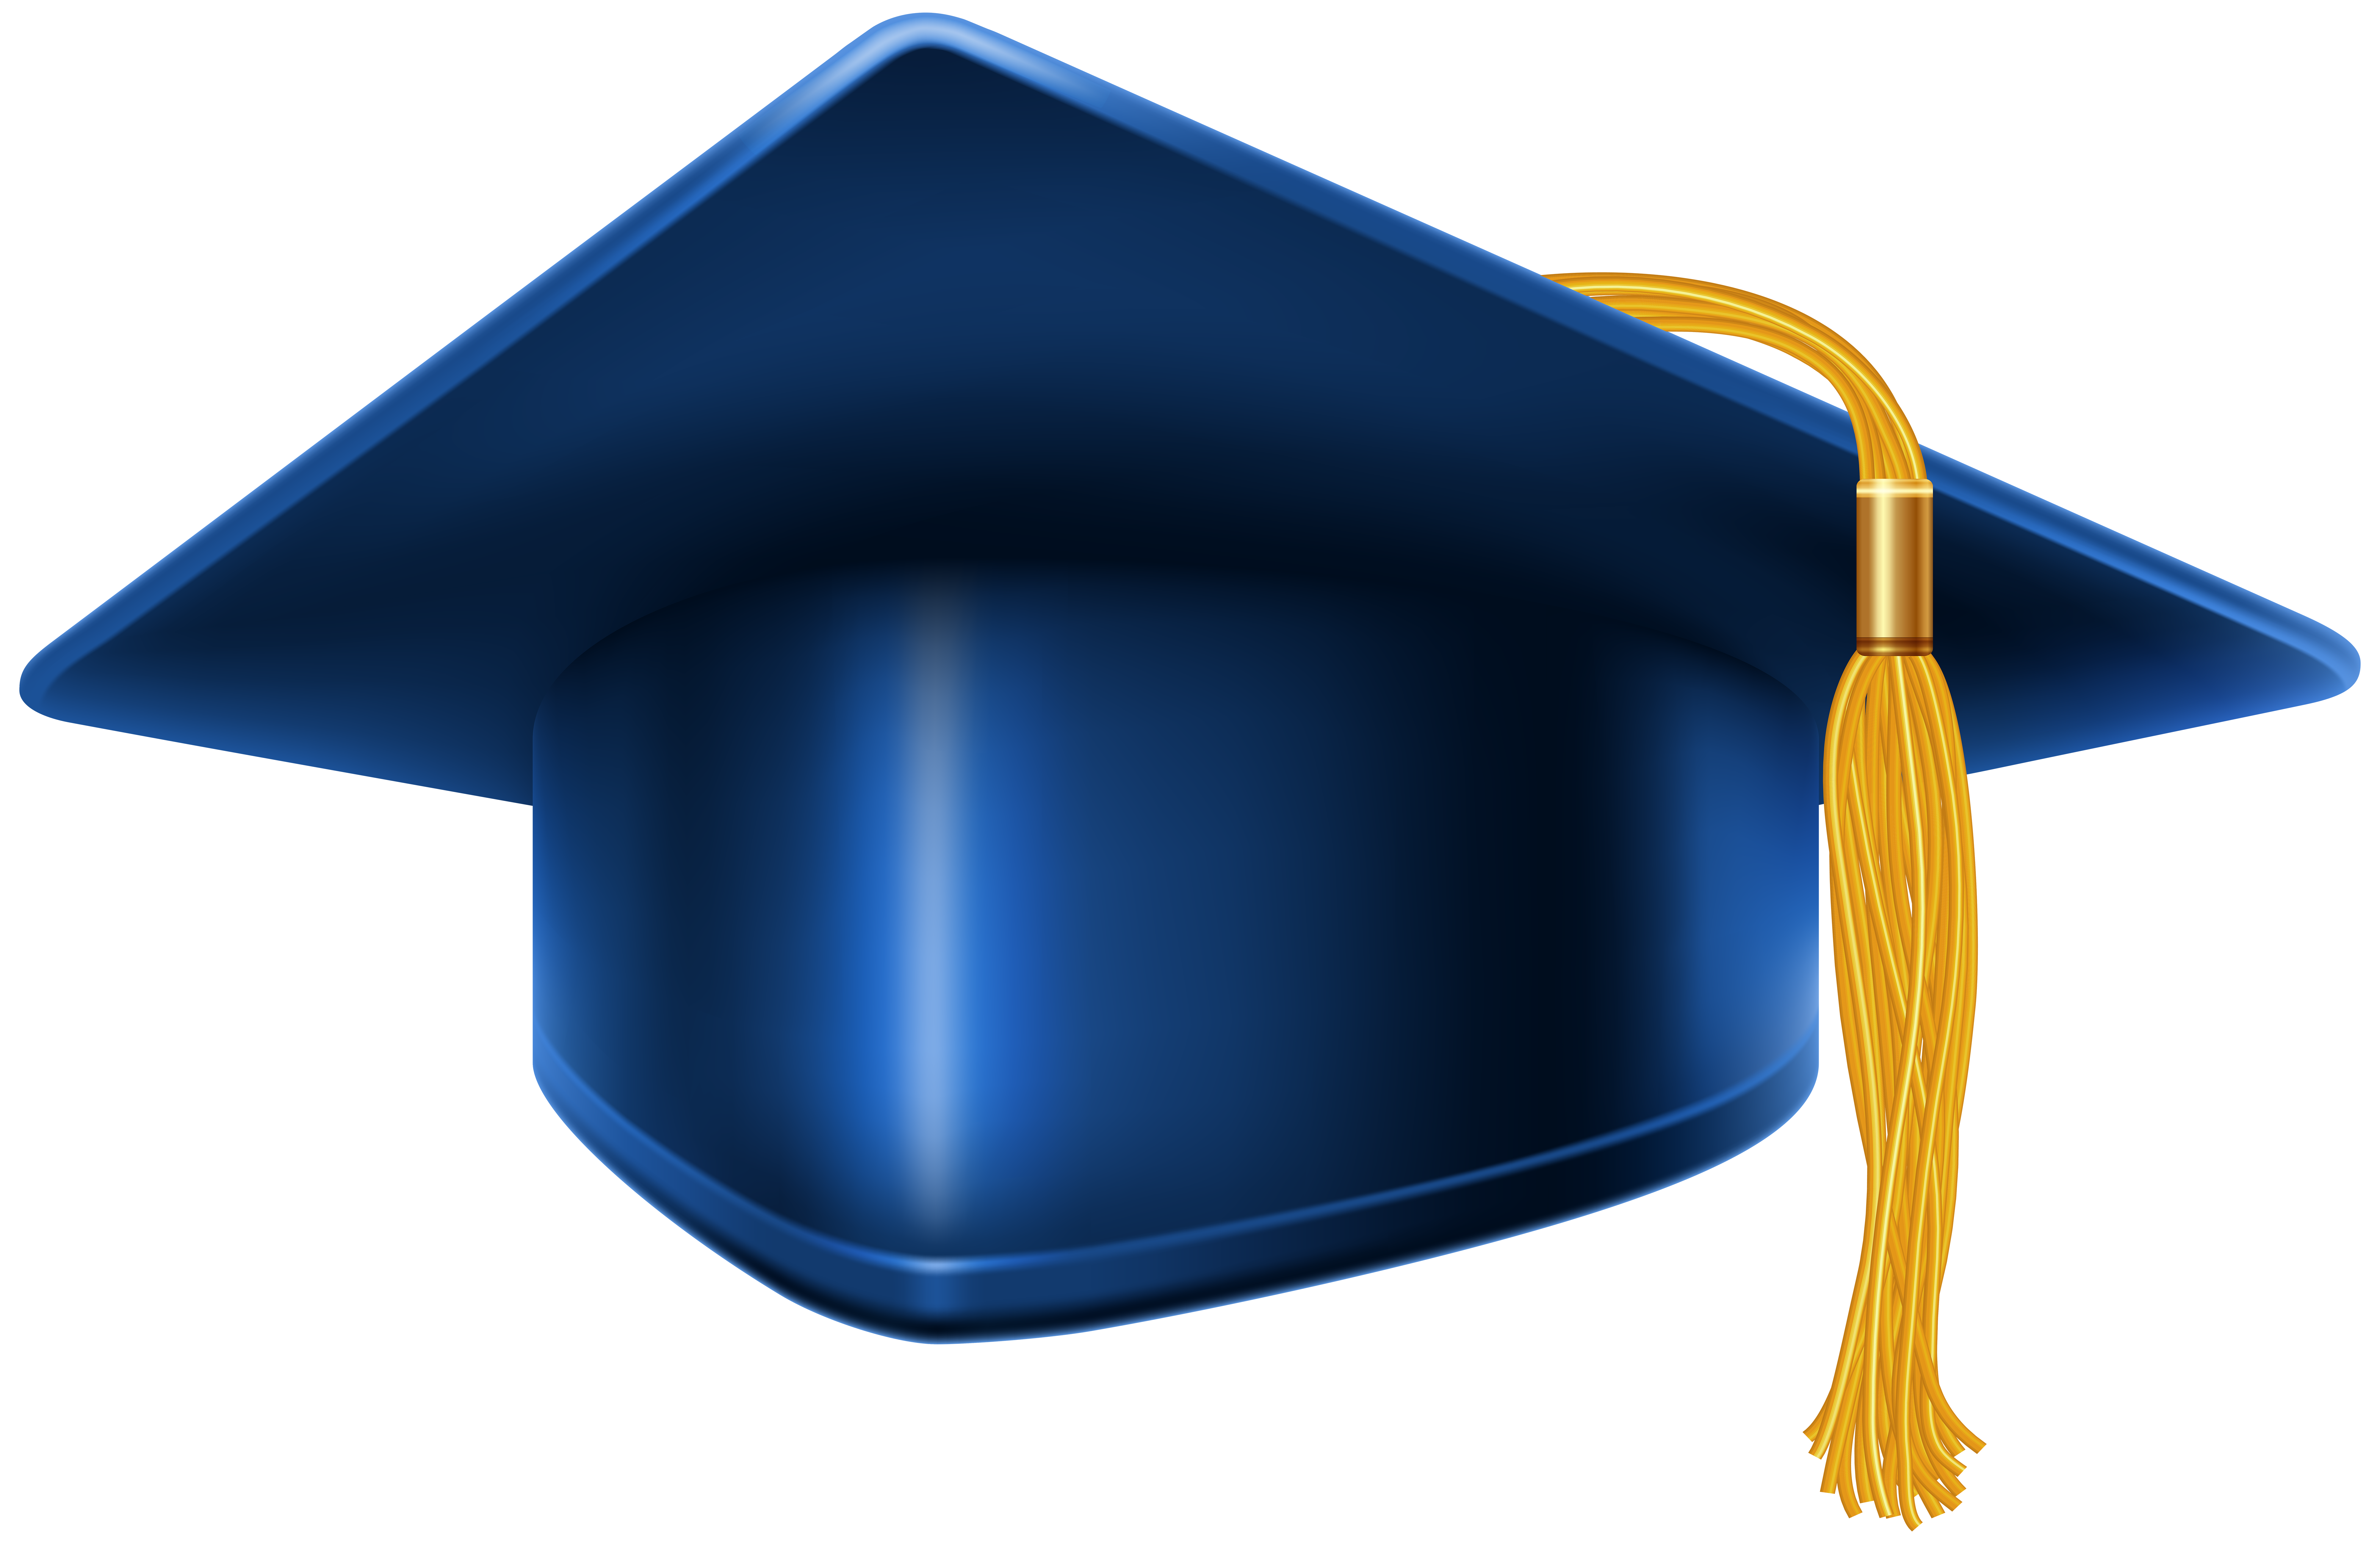 Blue Graduation Cap PNG Clip Art Image